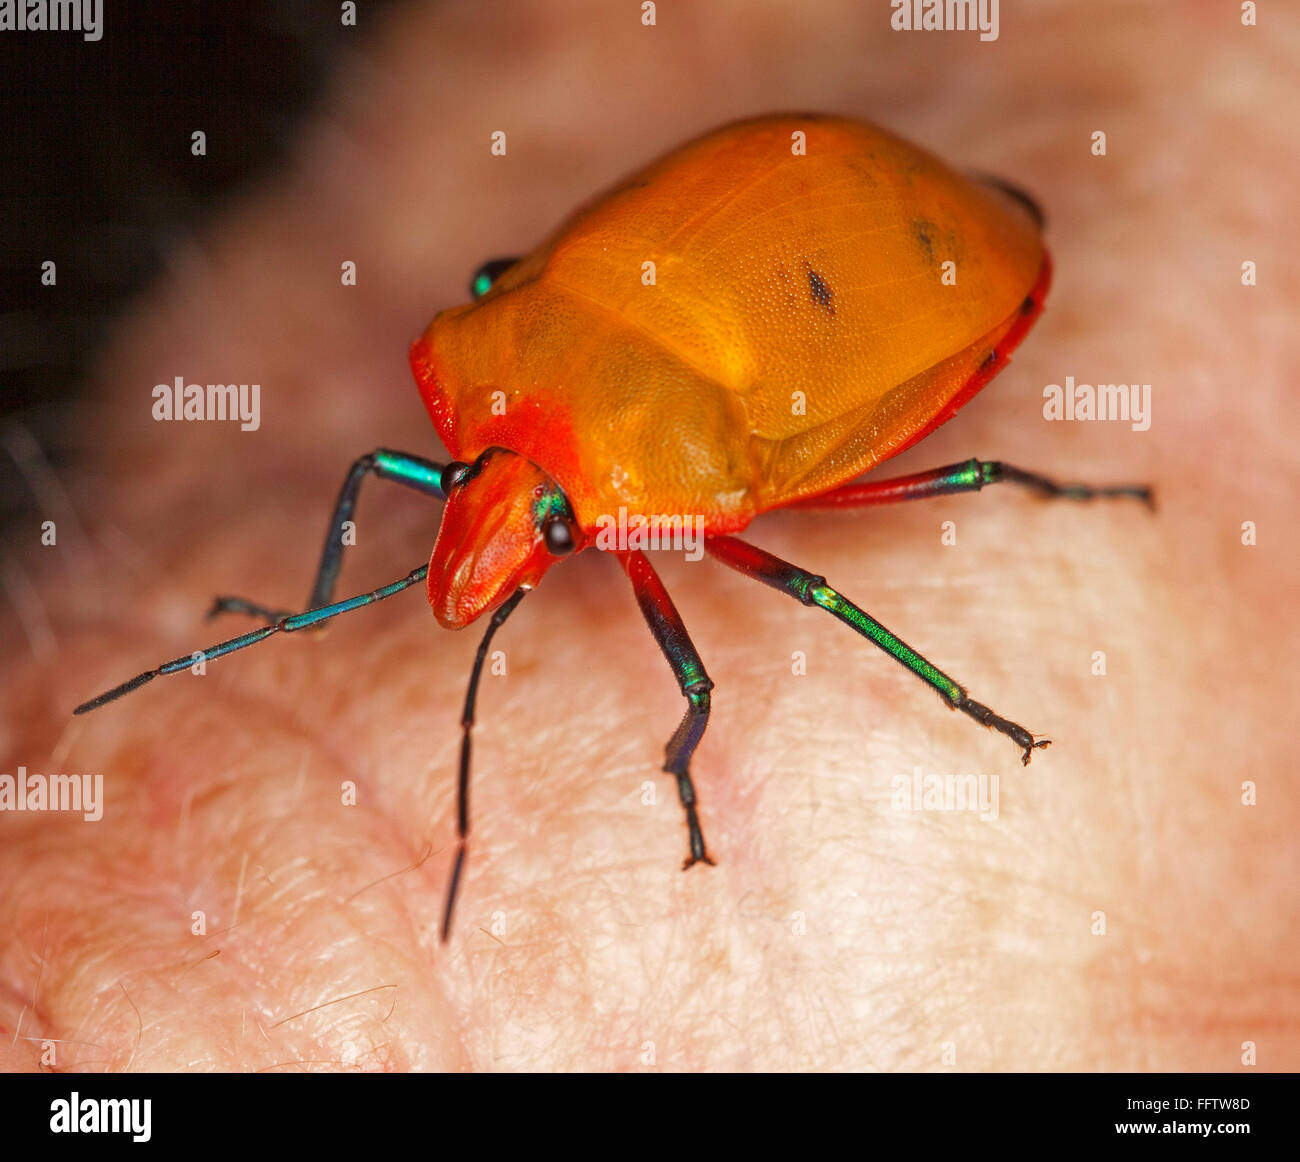 Spettacolare vivido arancione e rosso di insetto, Australian arlecchino / gioiello bug, Tectocoris diophthalmus sulla mano del giardiniere Foto Stock